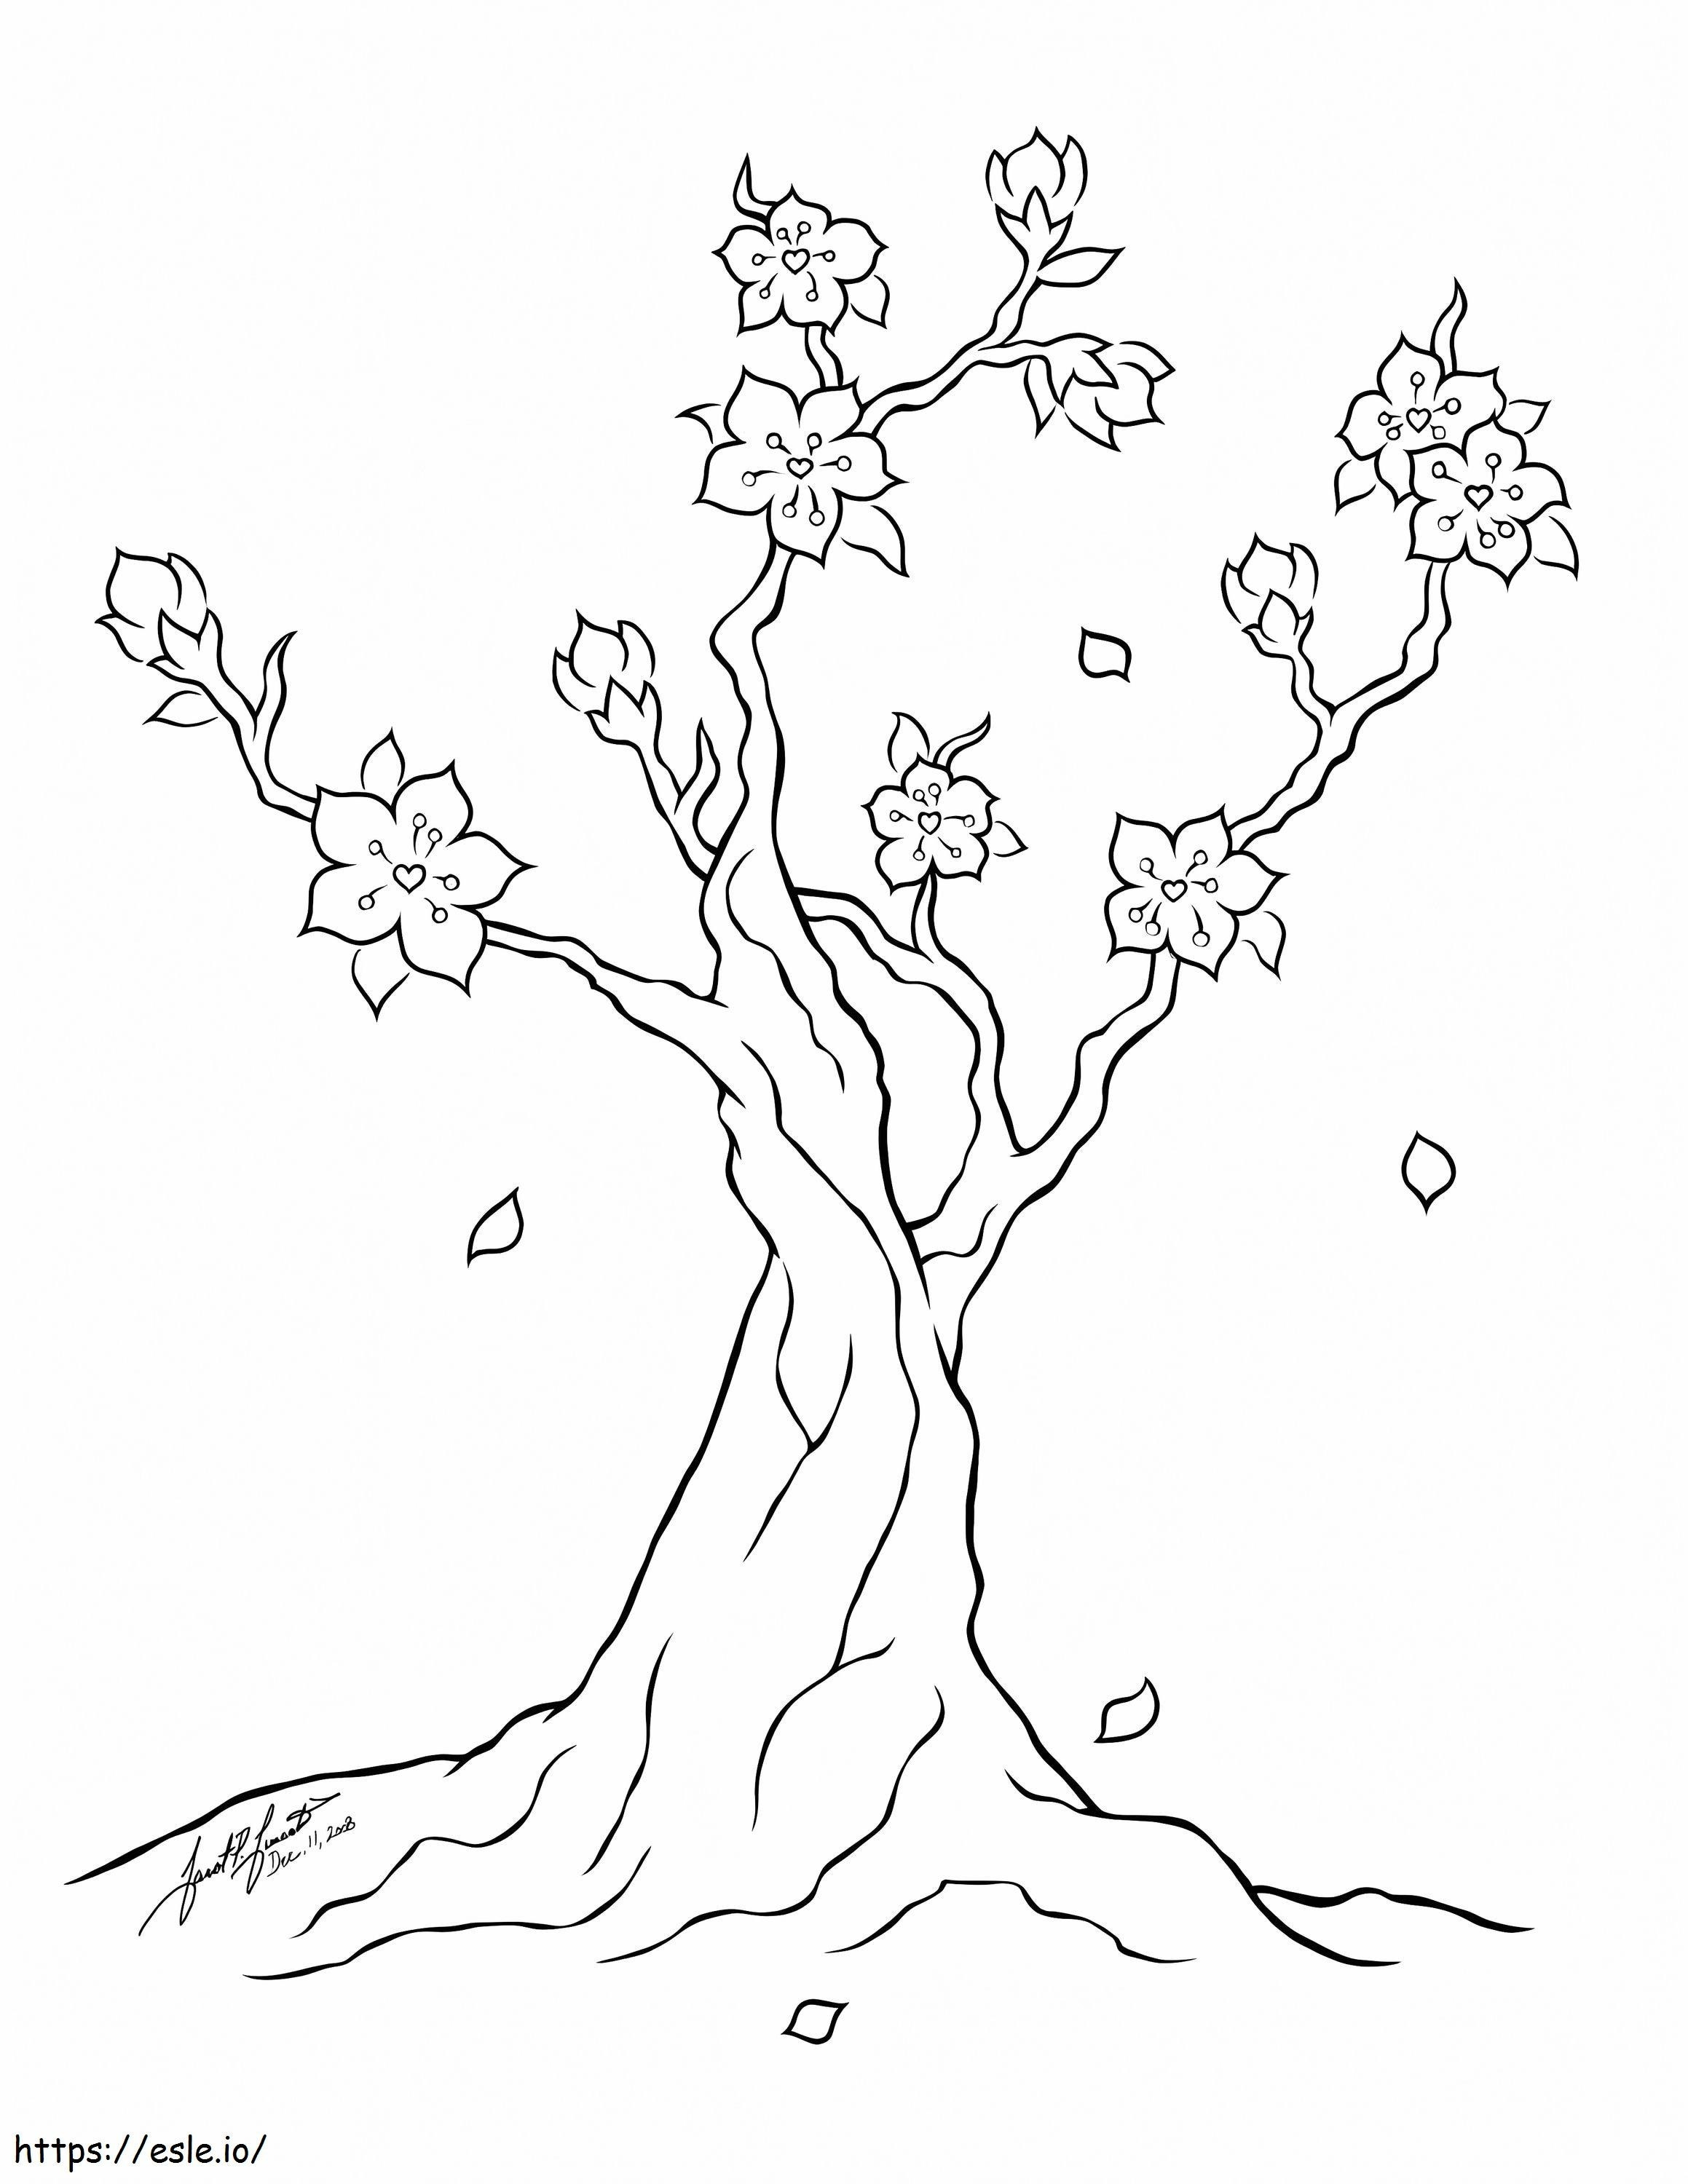 Uma árvore de flor de cerejeira para colorir